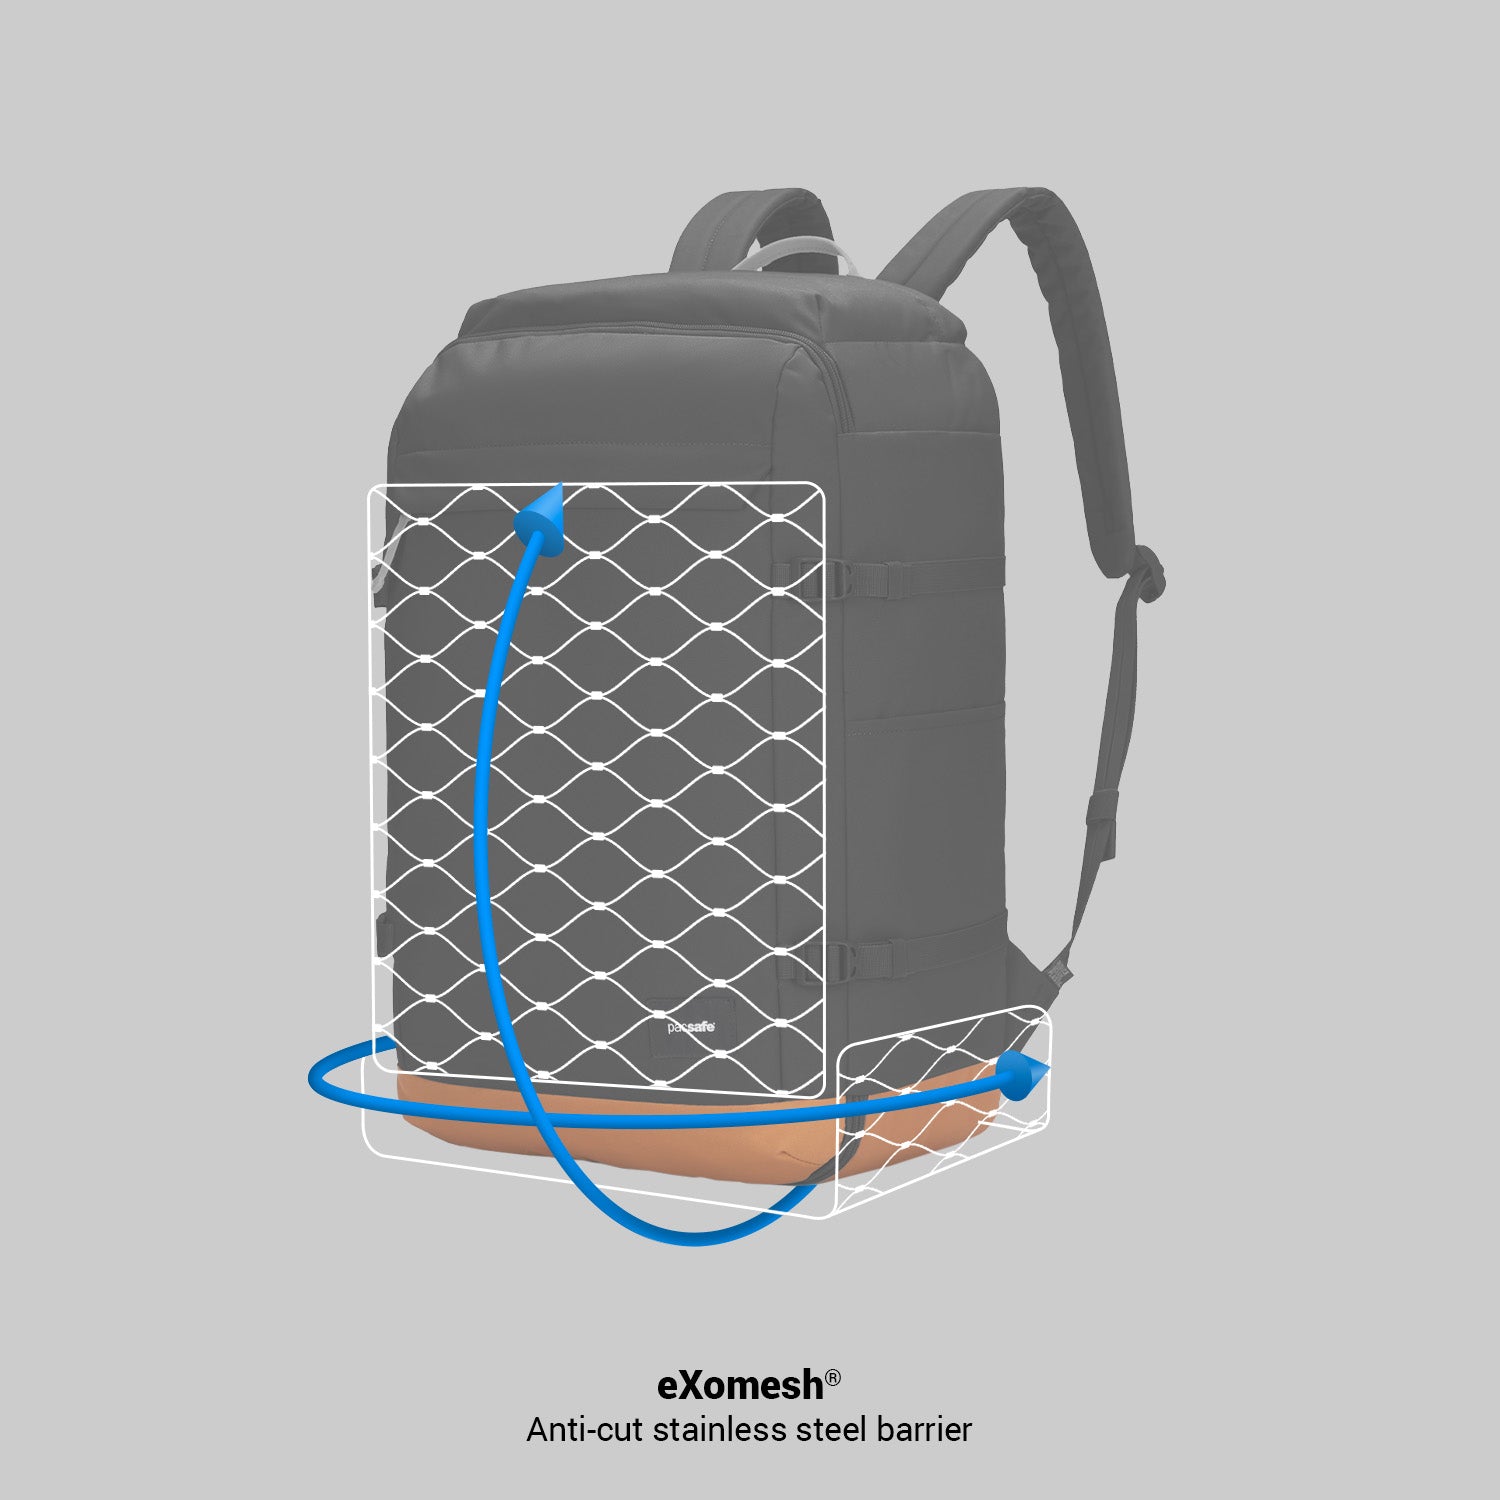 Pacsafe® GO anti-theft 44L carryon backpack | Pacsafe® - Pacsafe 